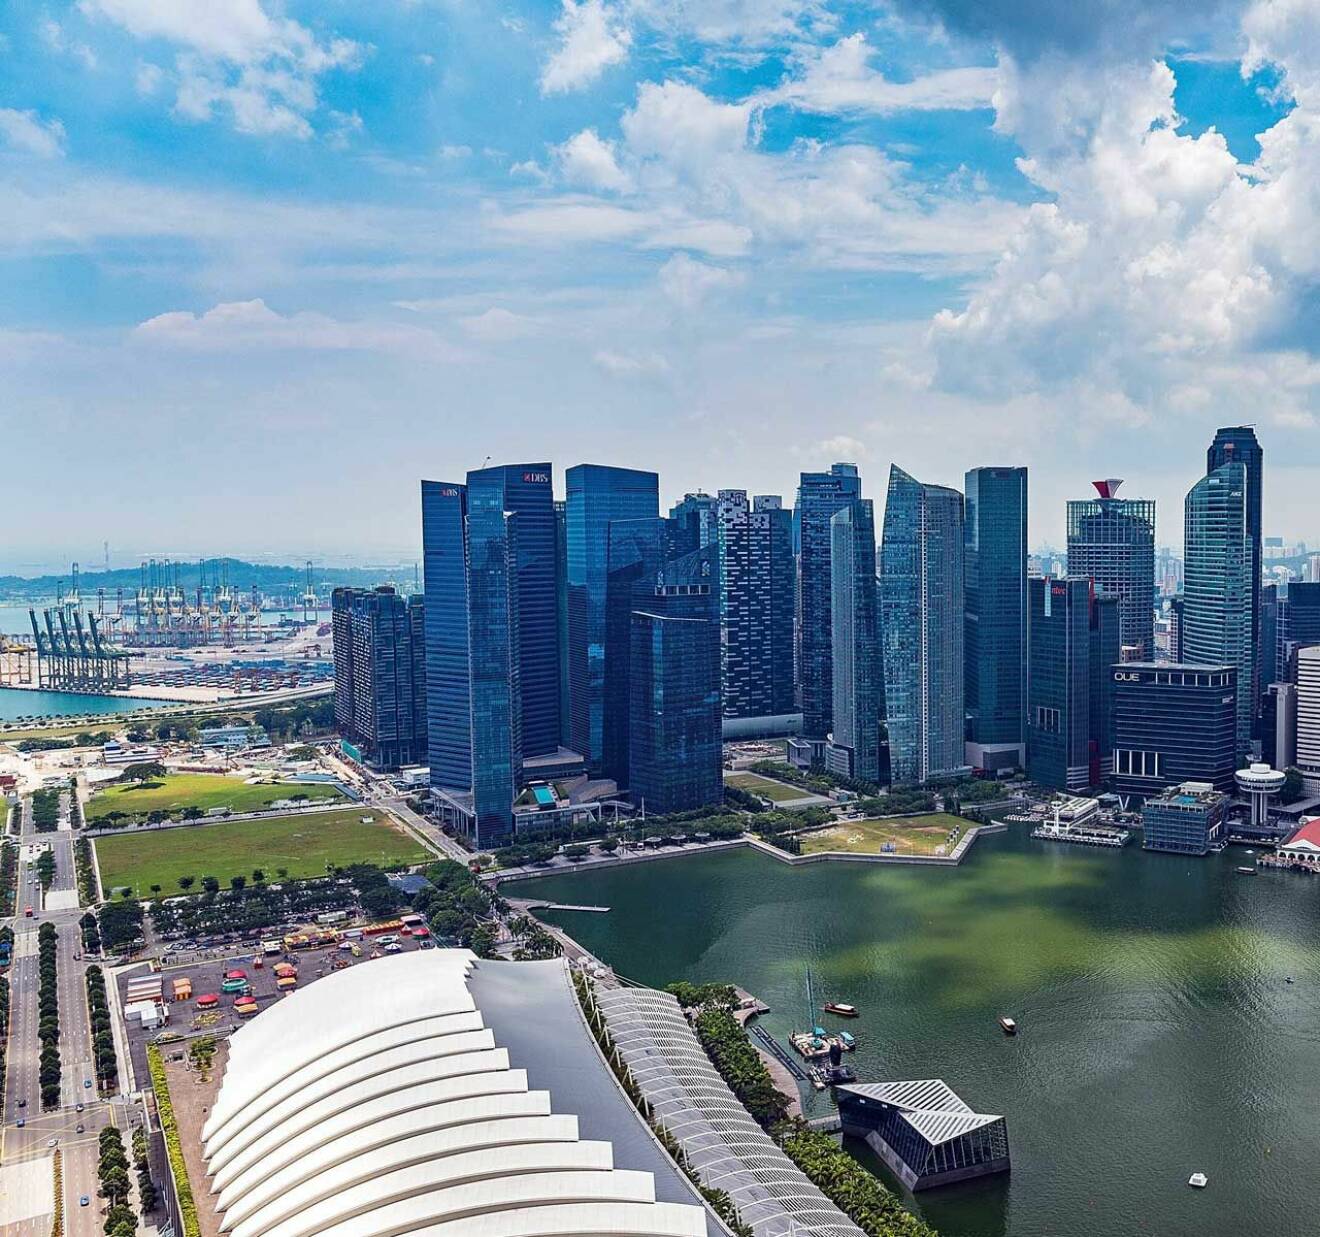 Prins Daniel reser till Singapore med sitt Fellowship och får uppleva stans imponerande skyline på plats.